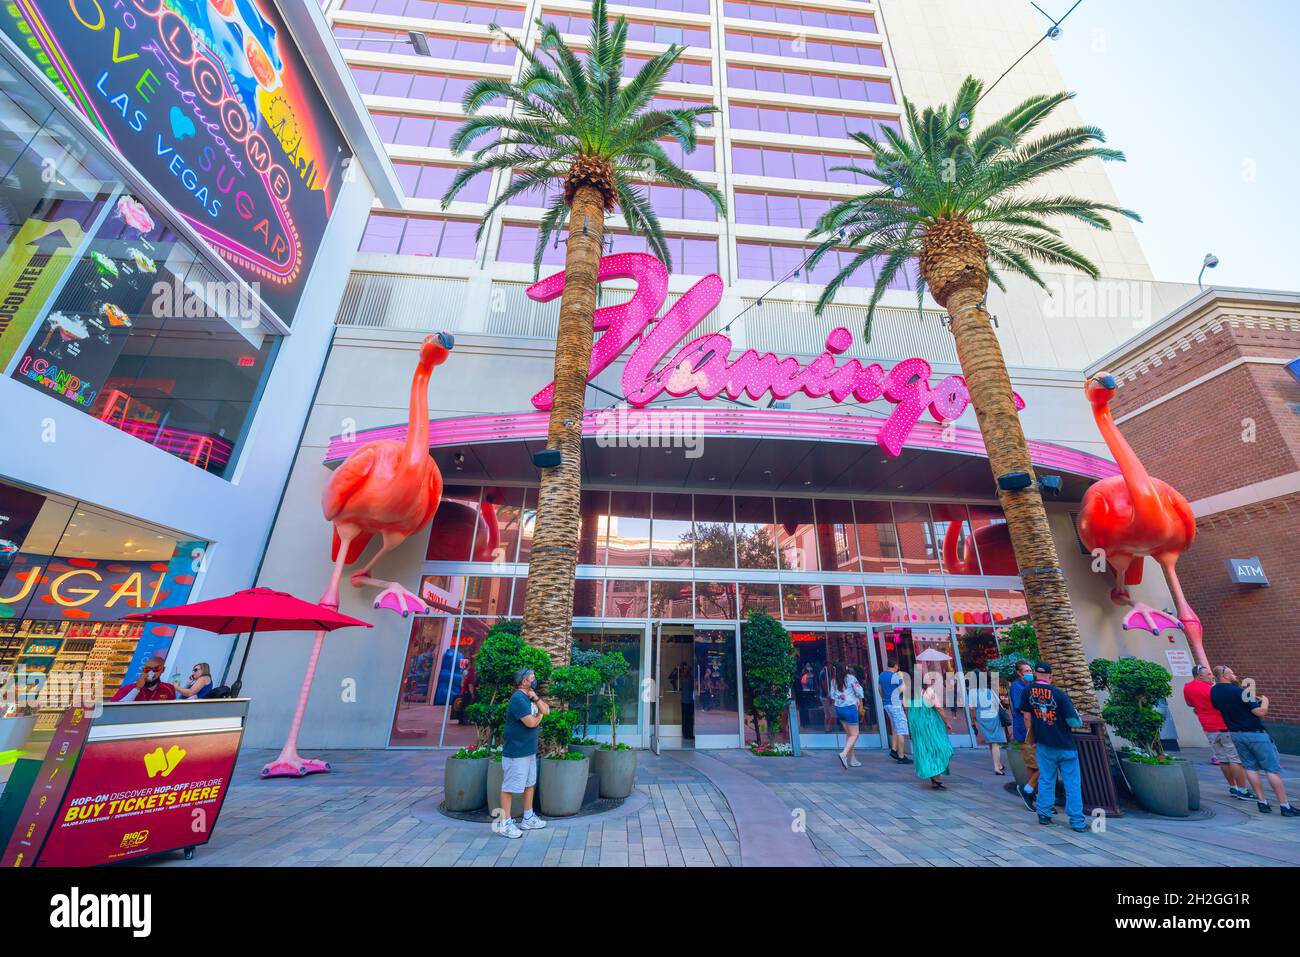 Flamingo Las Vegas, Las Vegas (NV)